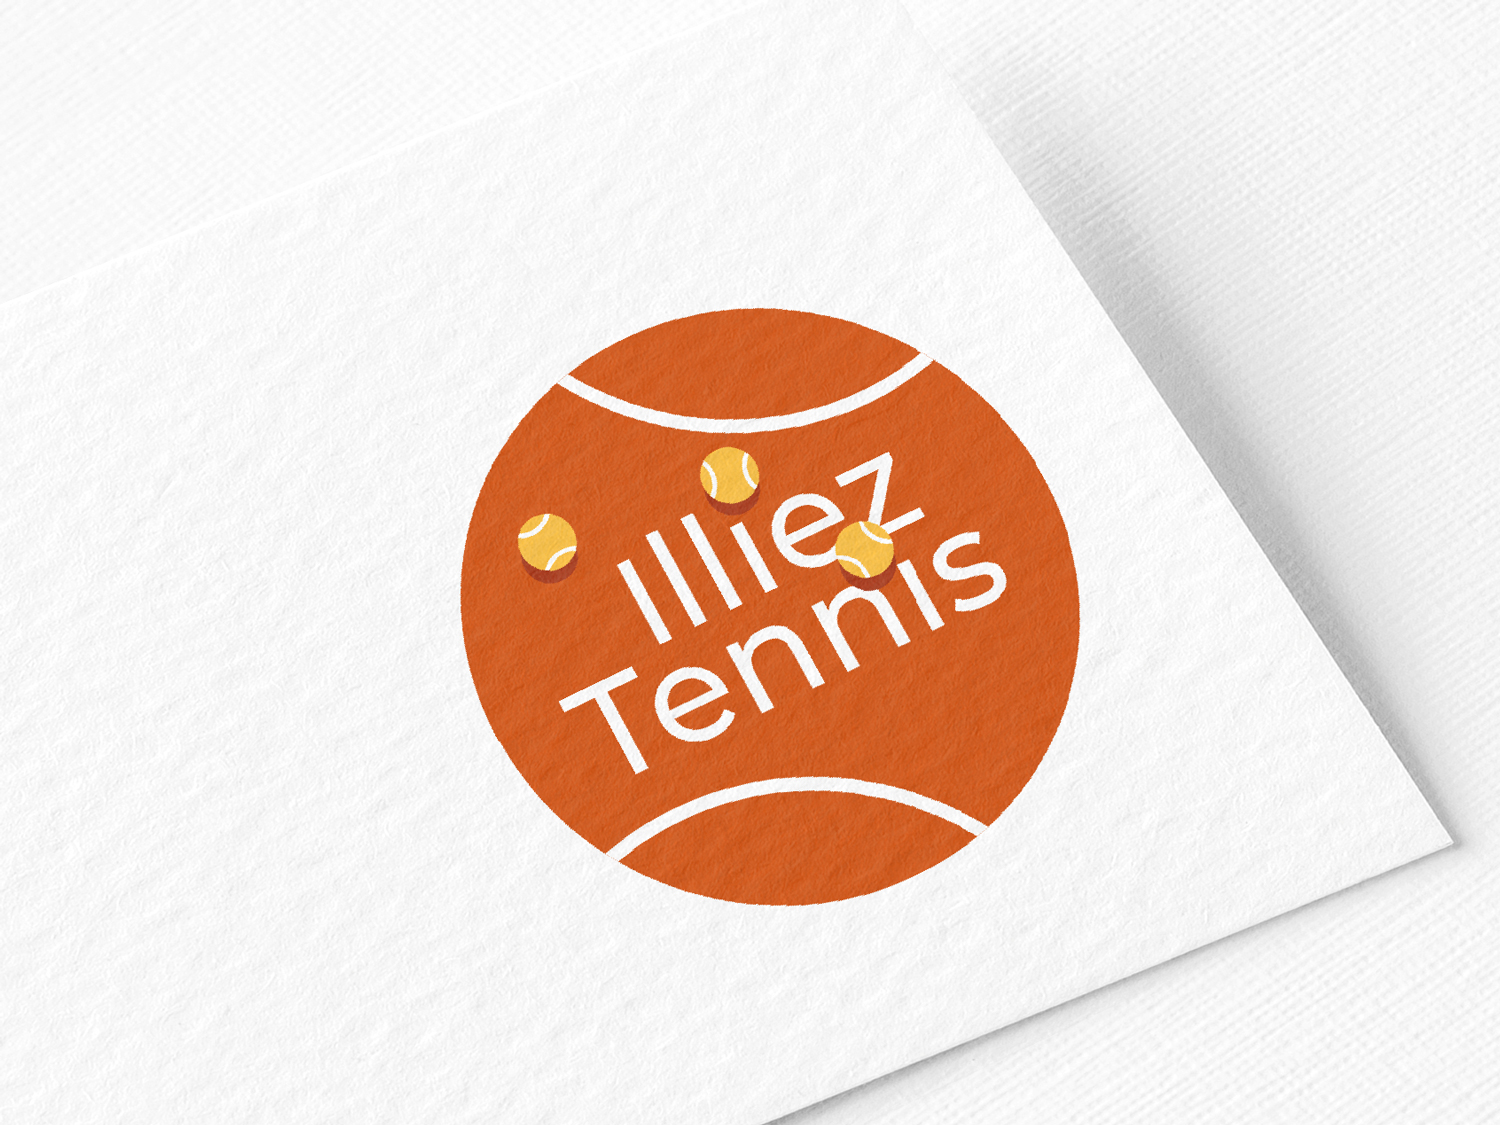 Création de logo pour un entraîneur de tennis